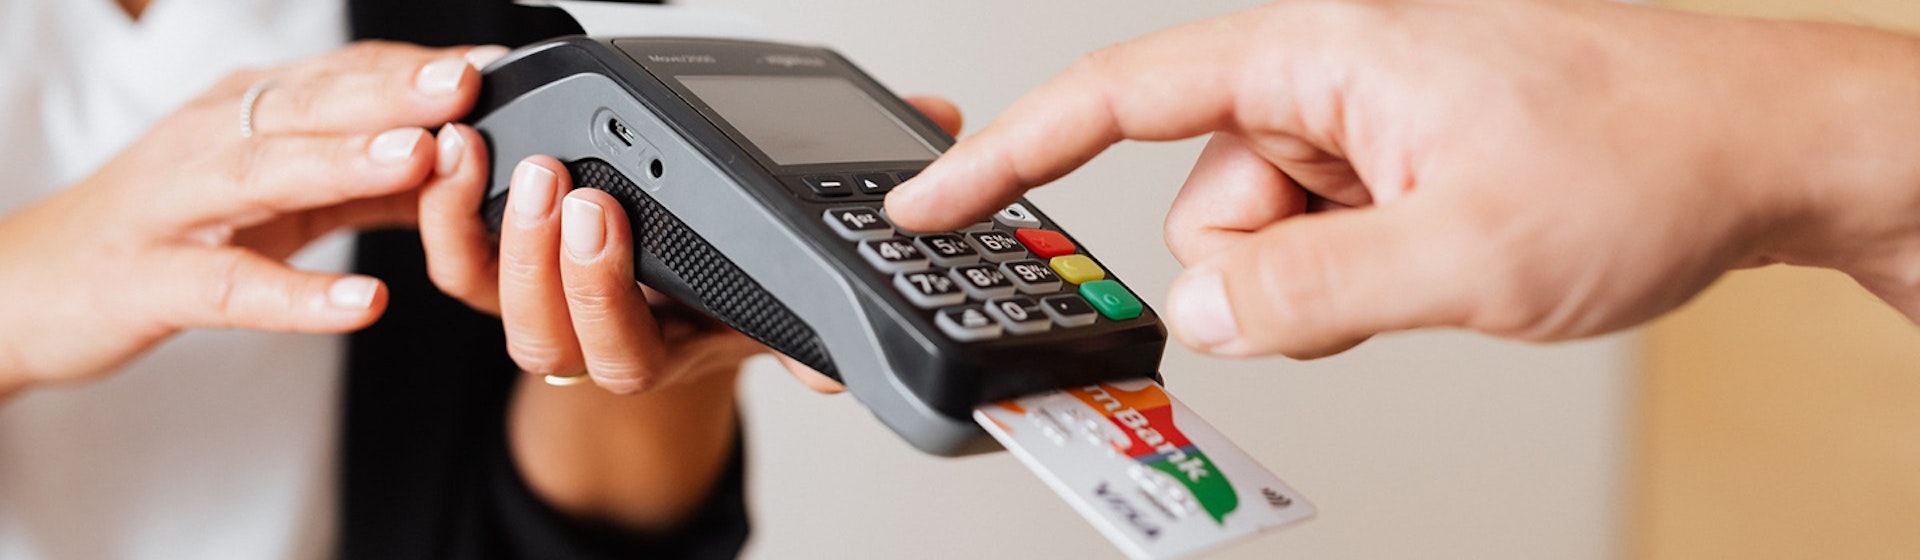 Cómo usar una tarjeta de crédito sin endeudarte y aprovechar sus beneficios